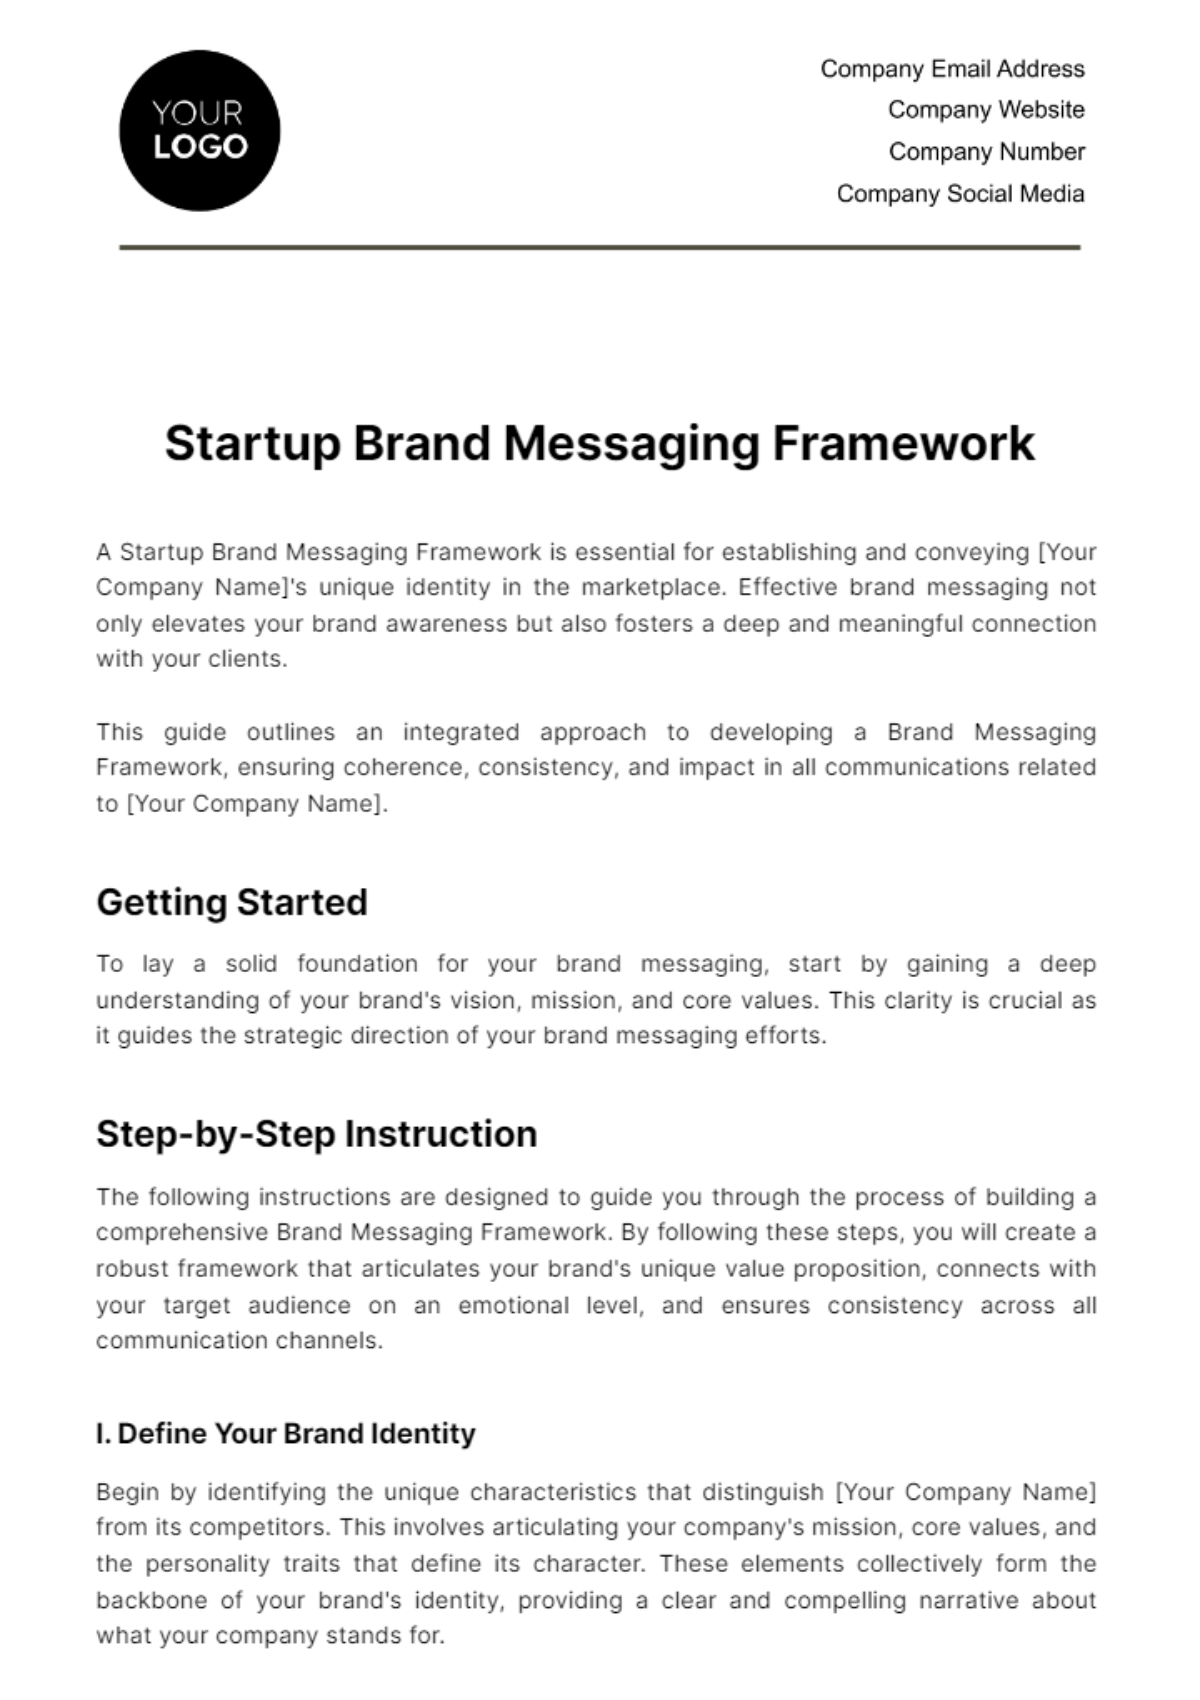 Startup Brand Messaging Framework Template